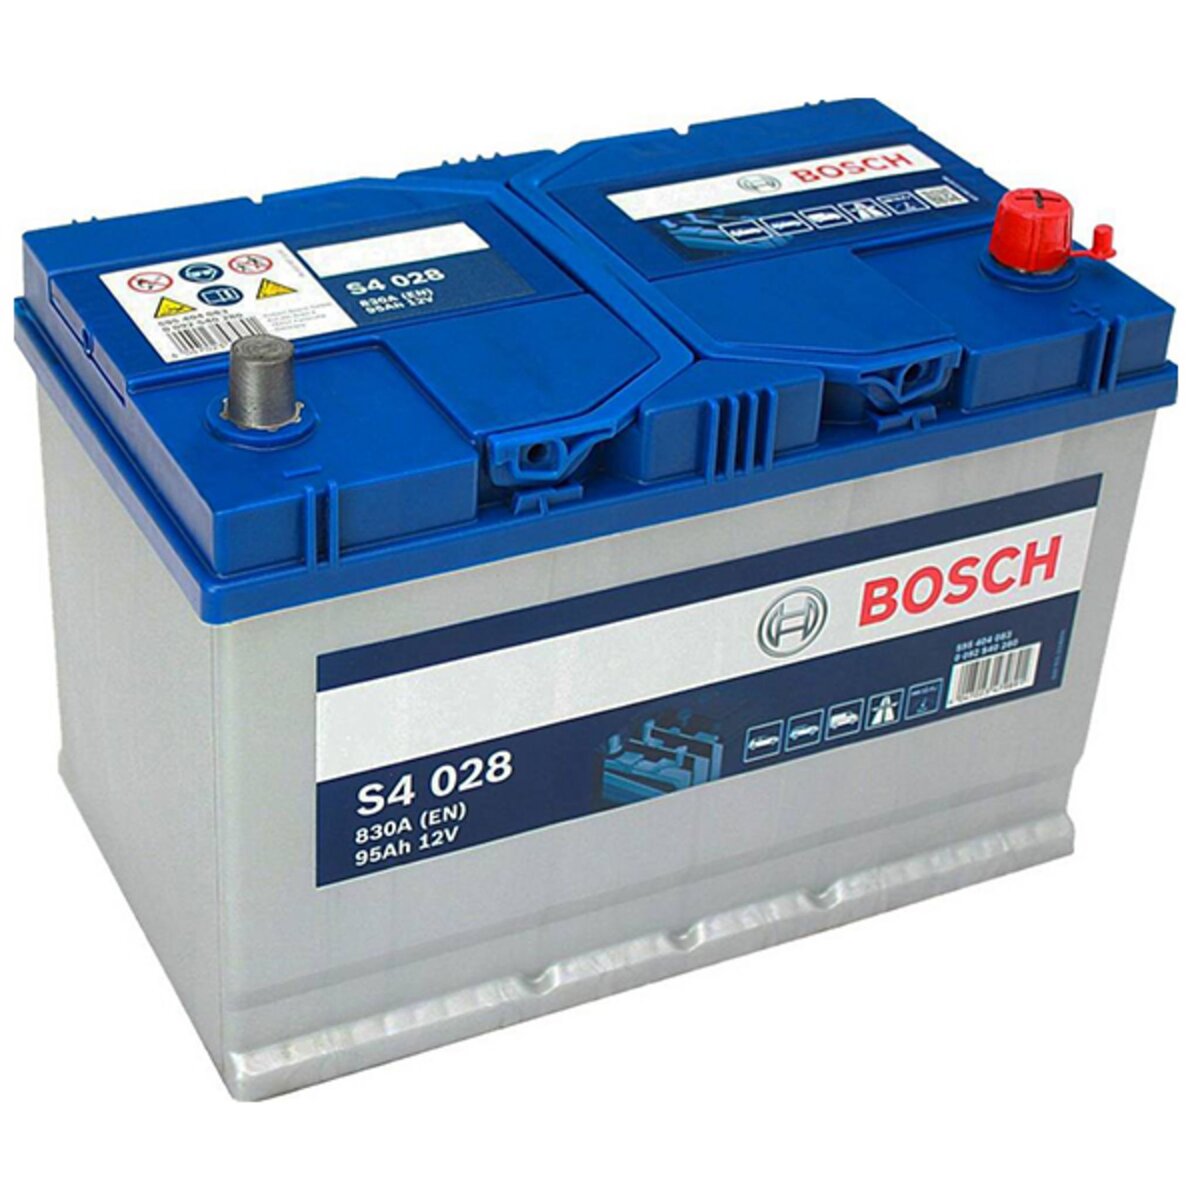 BOSCH Batterie Bosch S4028 95Ah 830A BOSCH pas cher 